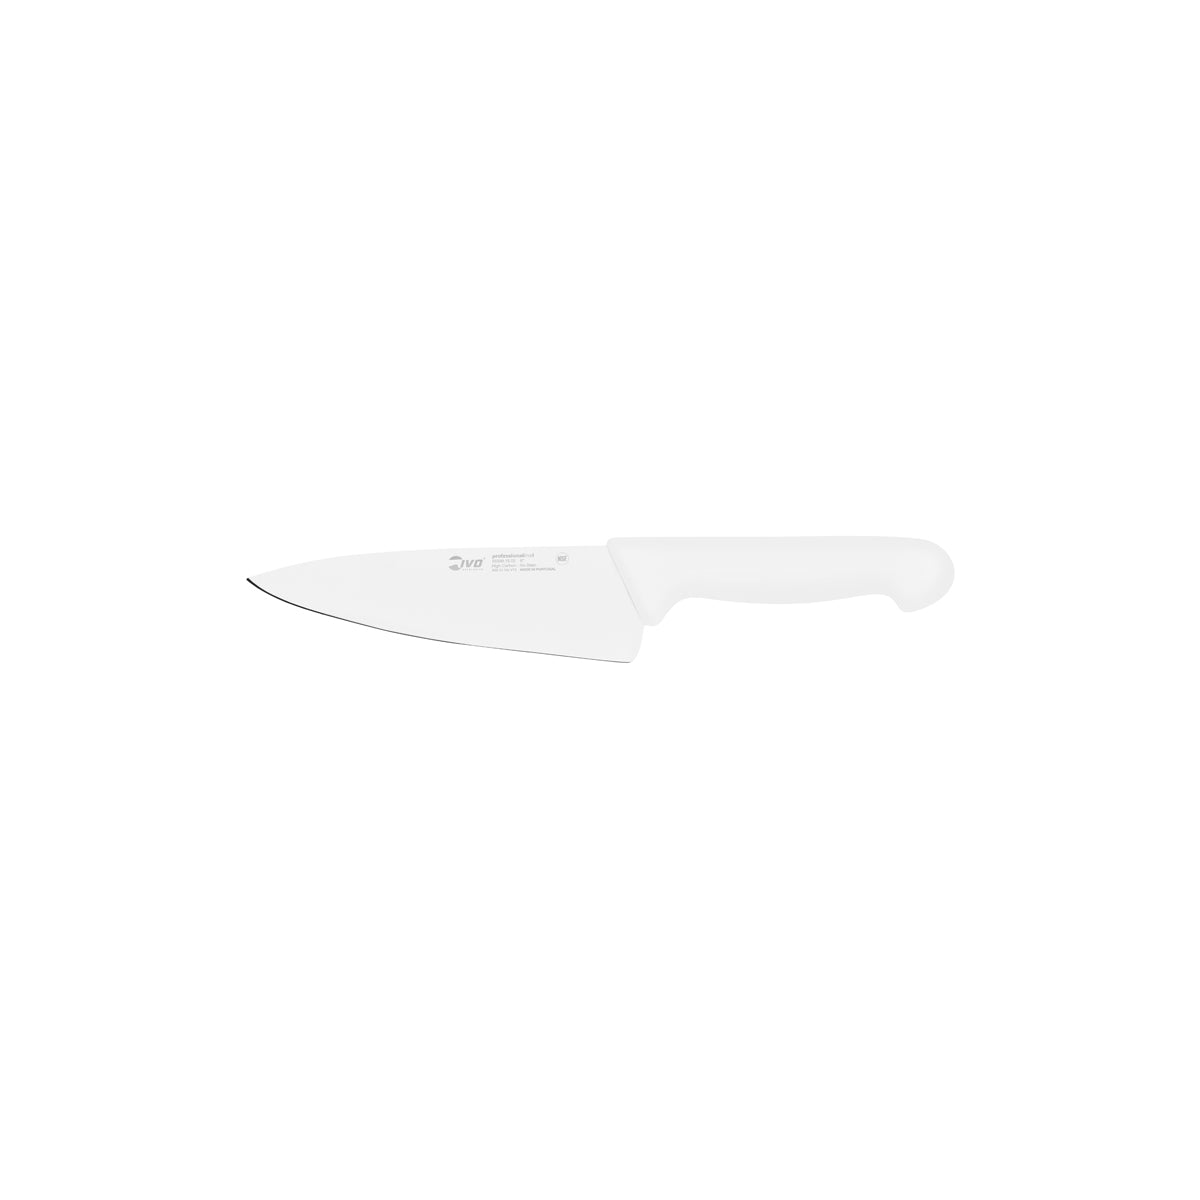 25475 Ivo Professional Line I Chefs Knife White 150mm Tomkin Australia Hospitality Supplies